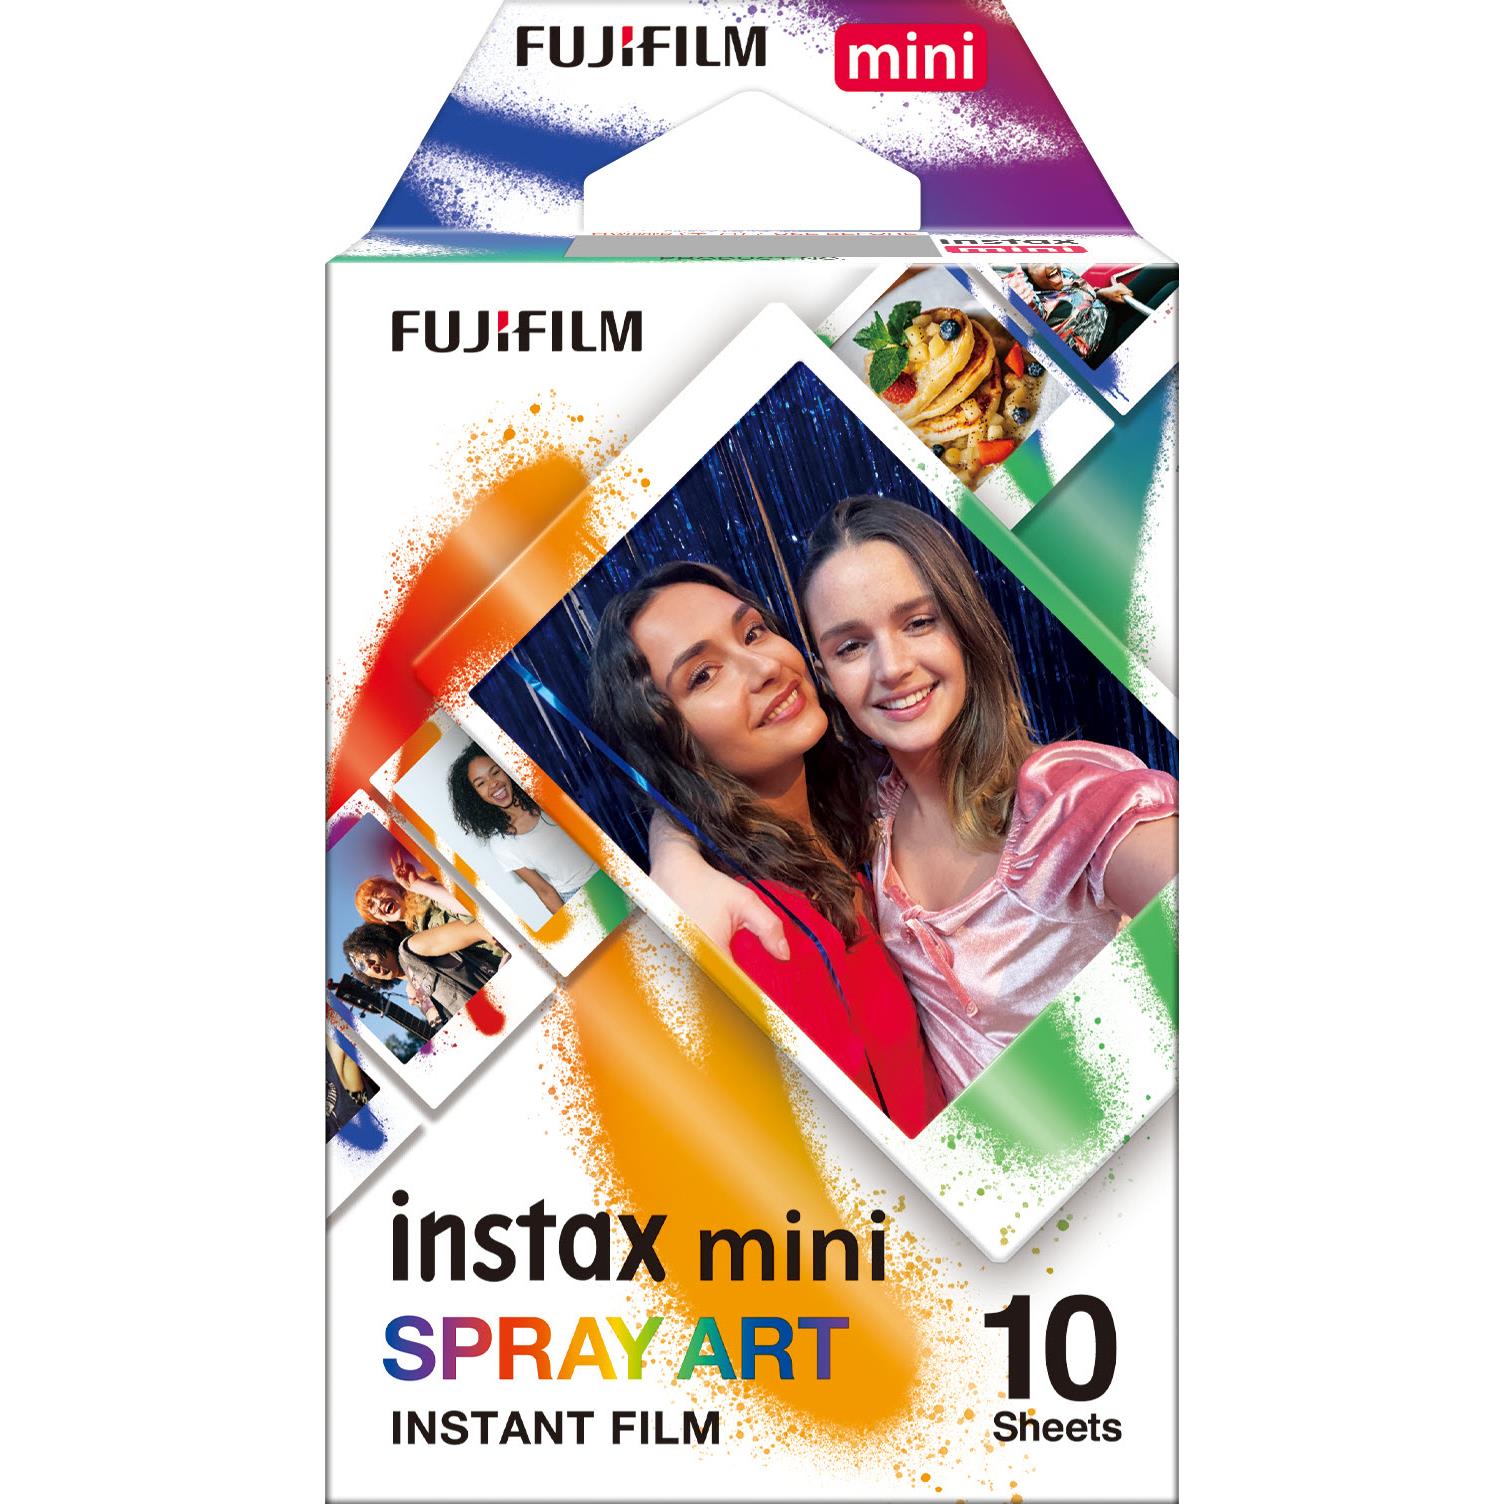 富士 FUJIFILM Instax Mini 即影即有方型相紙 – Spray Art (10 張) 即影即有相紙